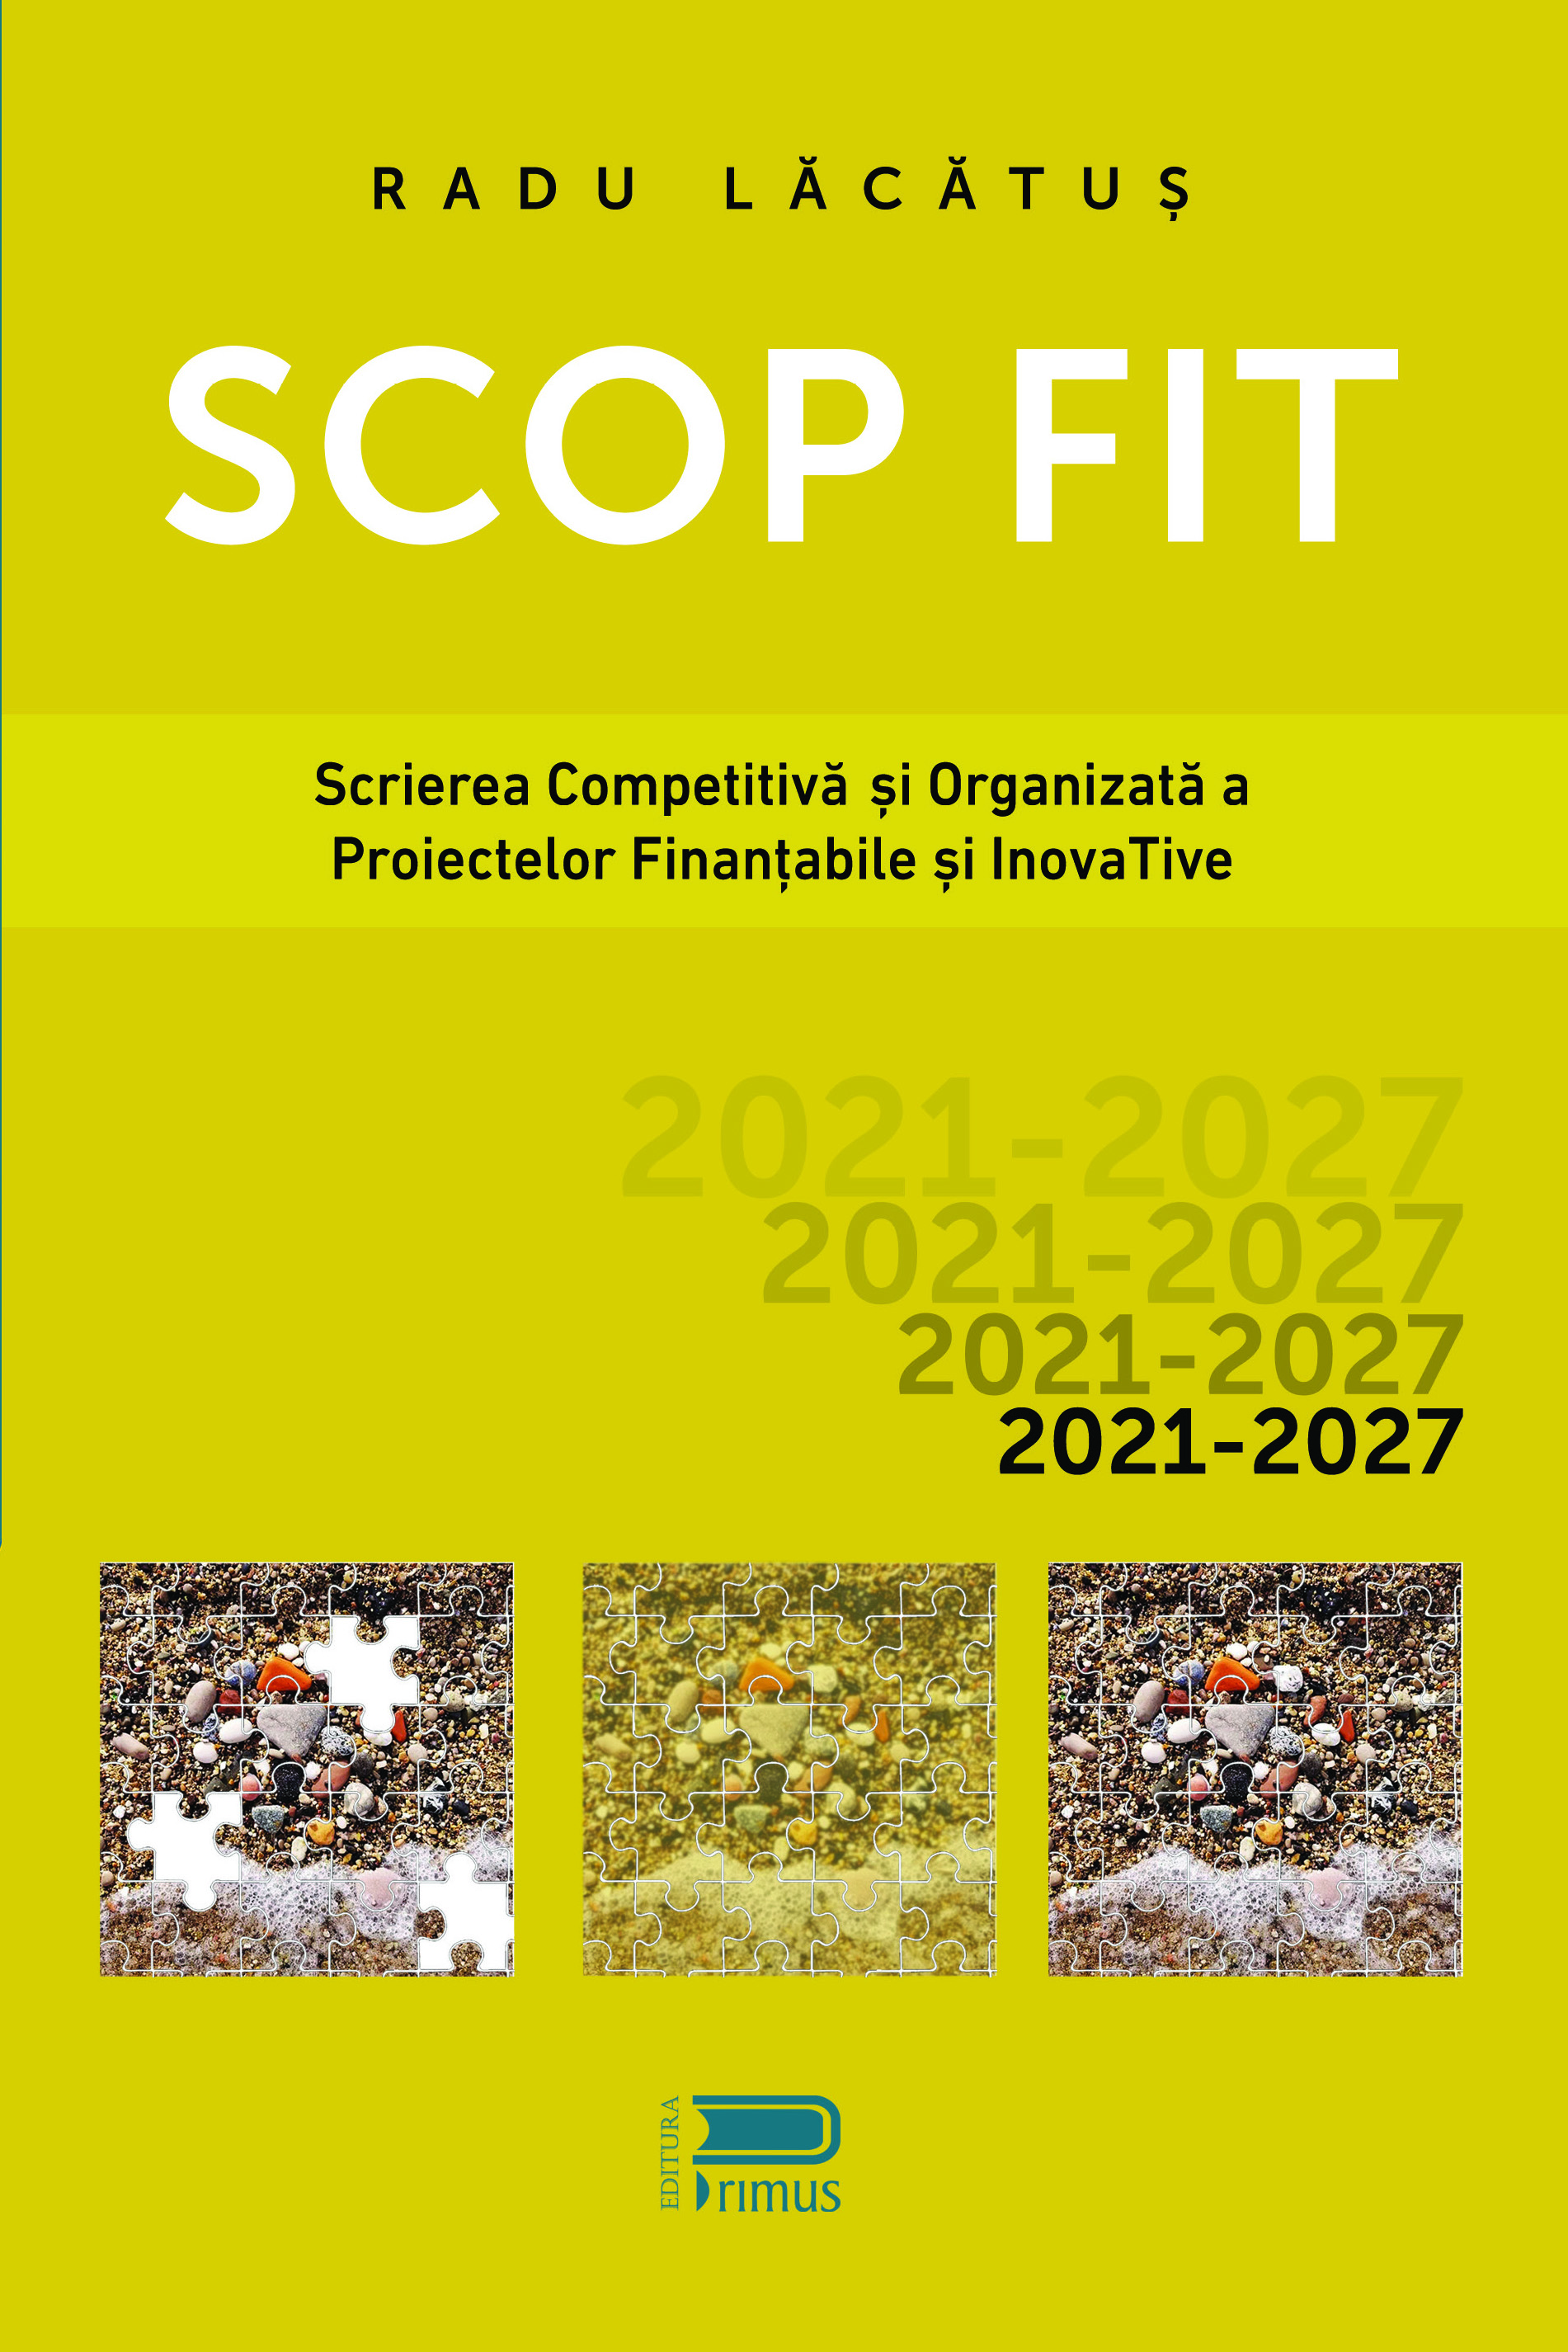 SCOP FIT: Scrierea competitiva si organizata a proiectelor finantabile si inovative | Radu Lacatus carturesti.ro poza 2022